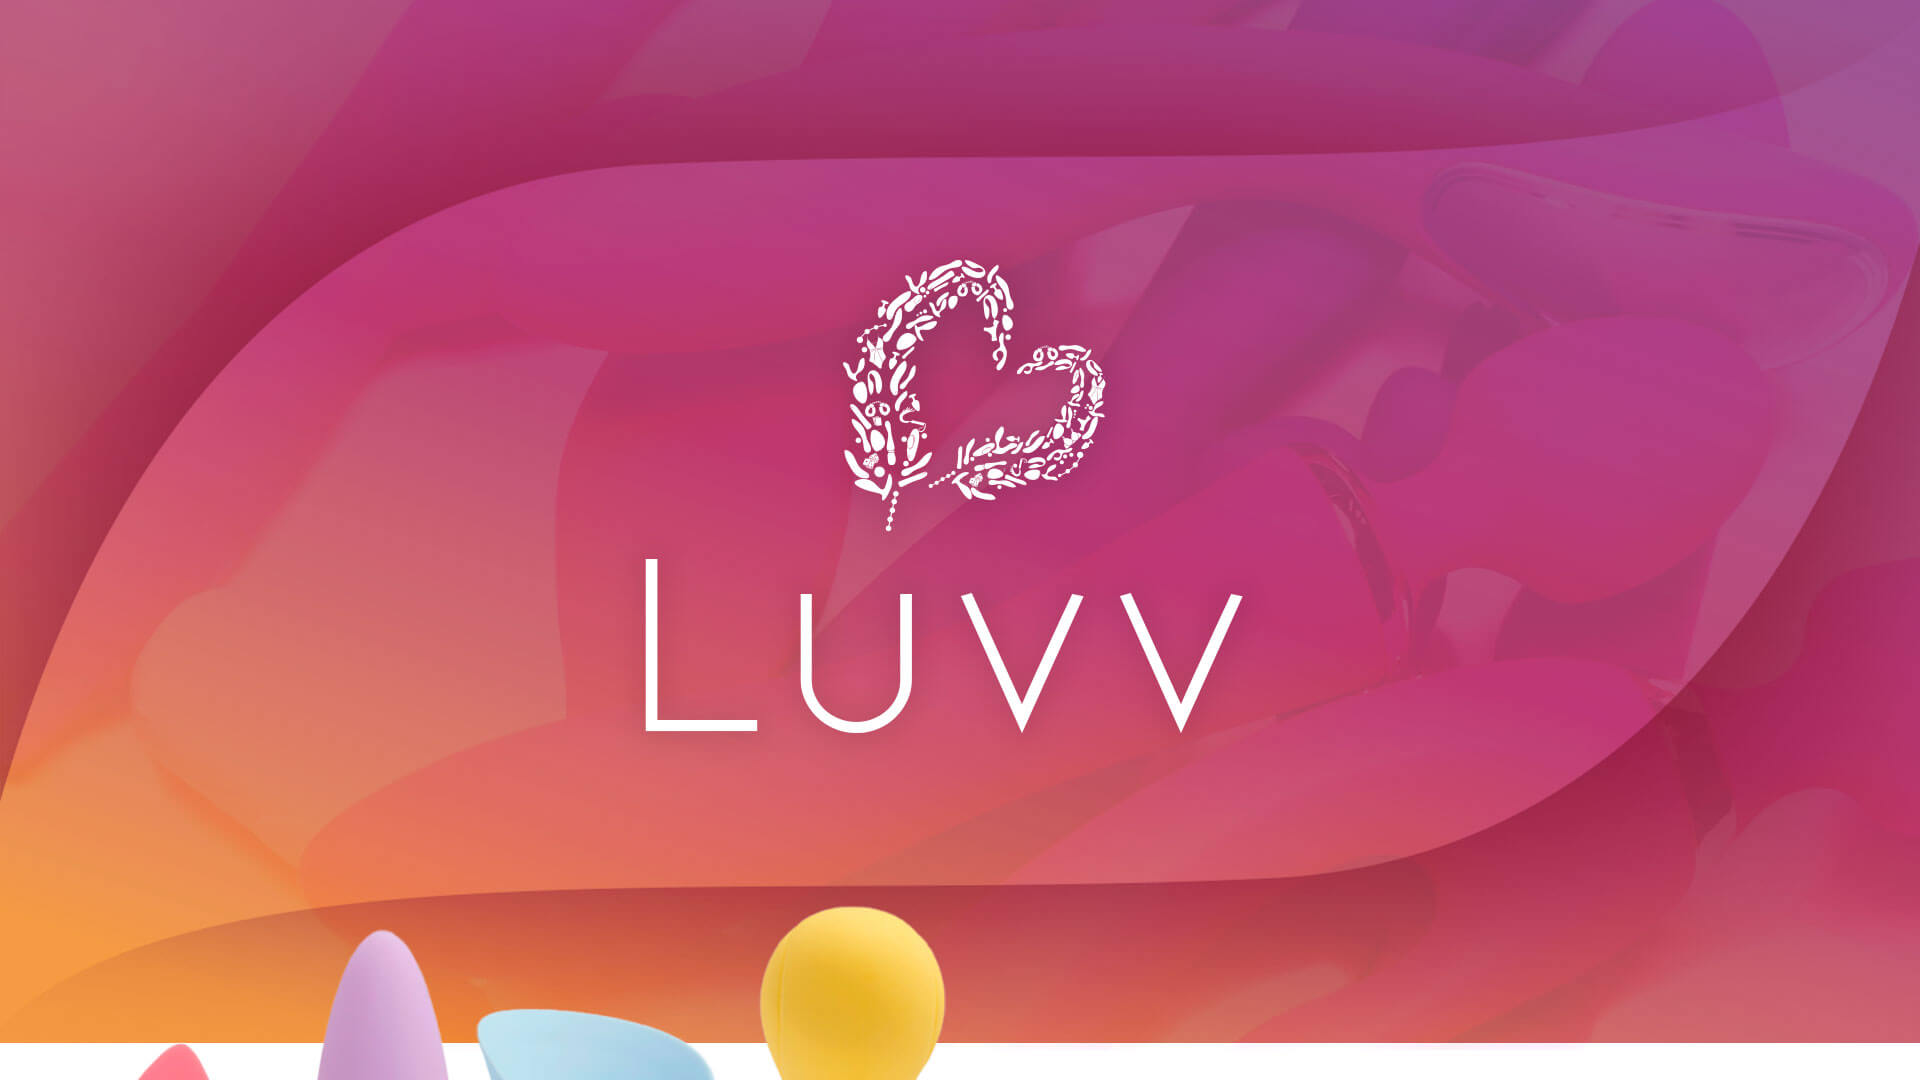 Luvv-Apresentação-marca-logo-id-idvisual-2021_01